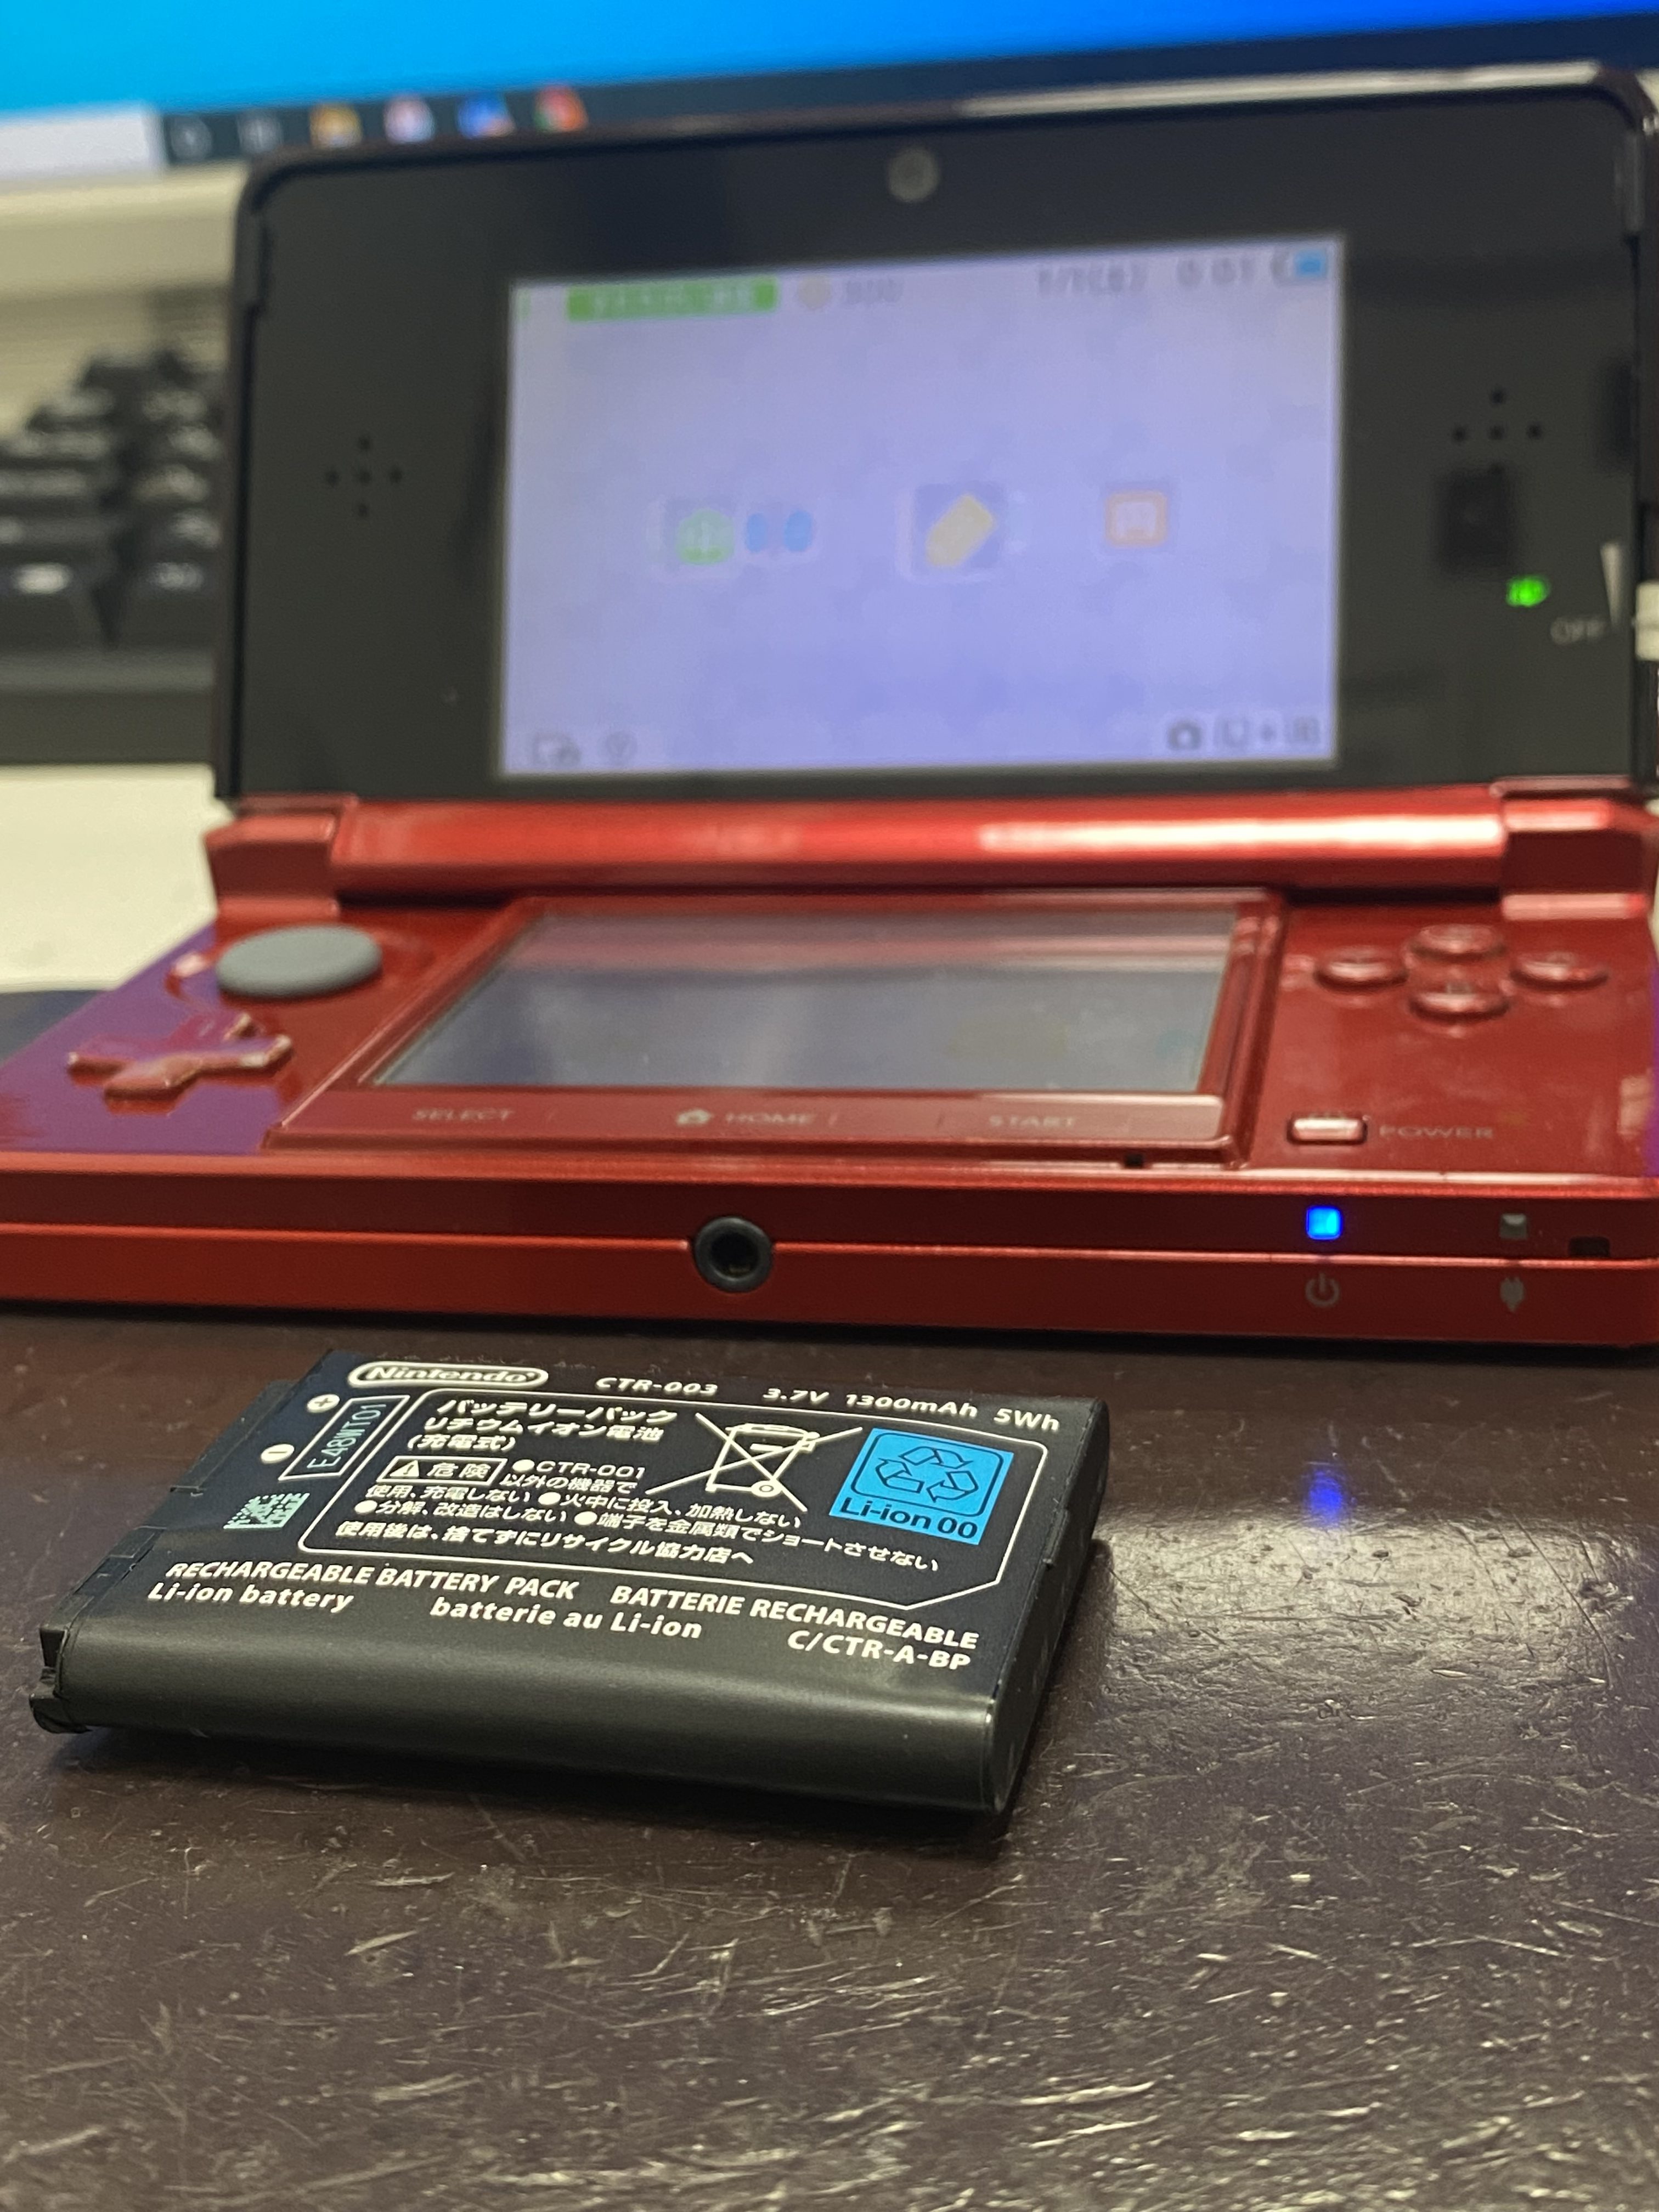 バッテリー拡張型 3DS LL ソフト付き SDカードつき